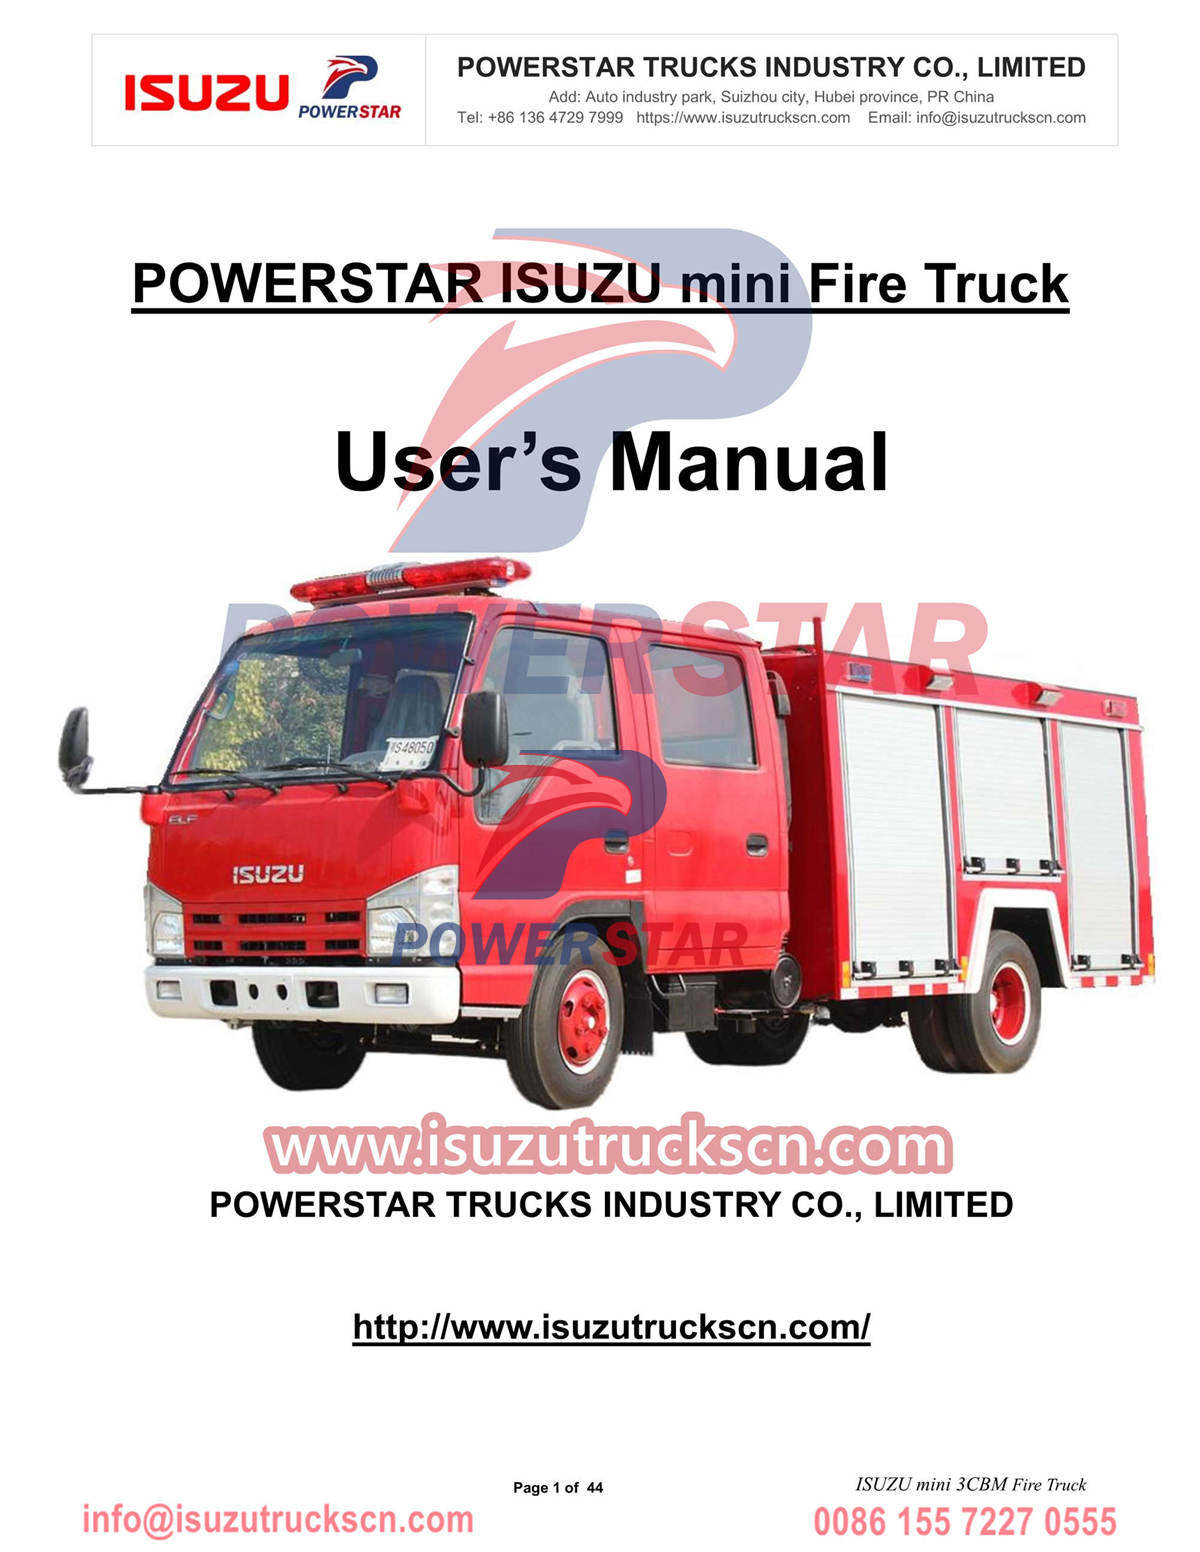 ISUZU mini Fire Truck Руководство по эксплуатации, экспорт из Палау
        